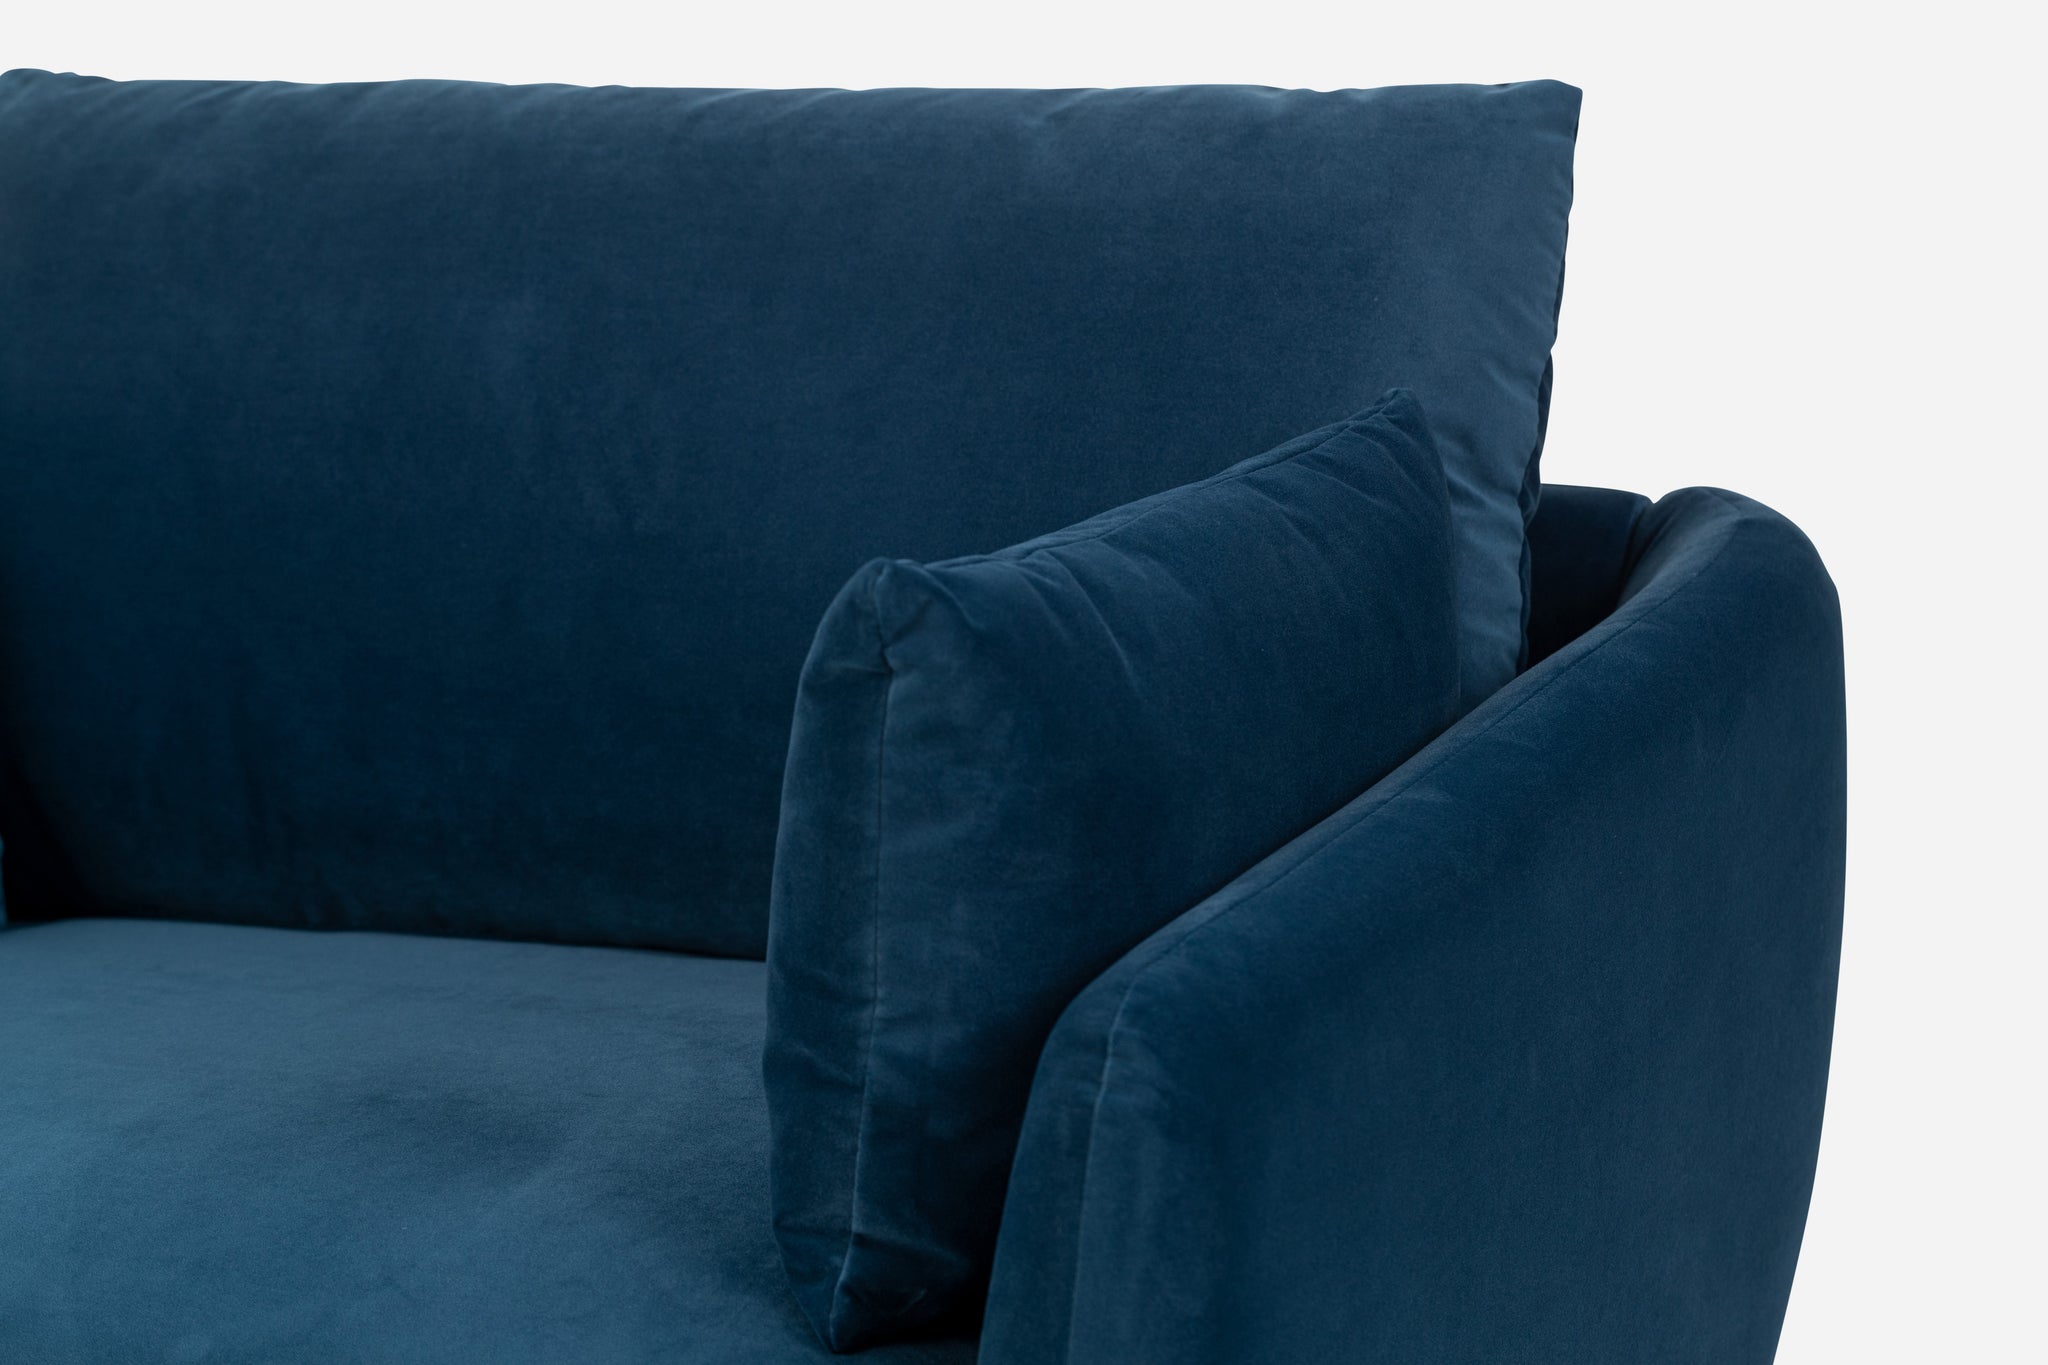 park sofa shown in blue velvet with black legs